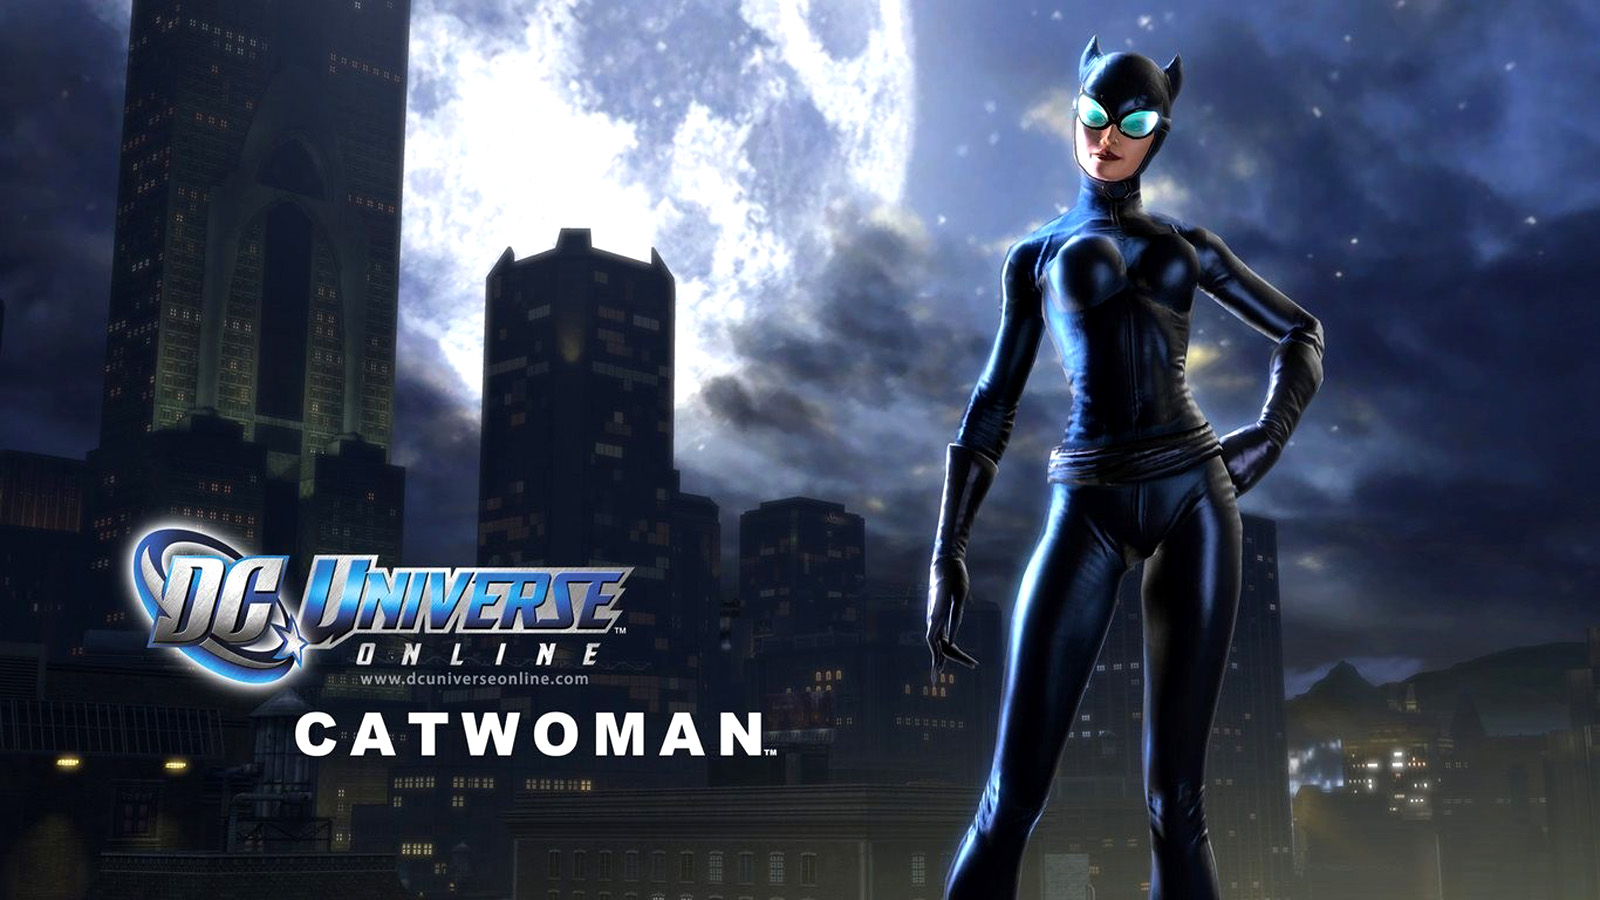 fondo de pantalla de dc universe,juego de acción y aventura,personaje de ficción,catwoman,superhéroe,supervillano